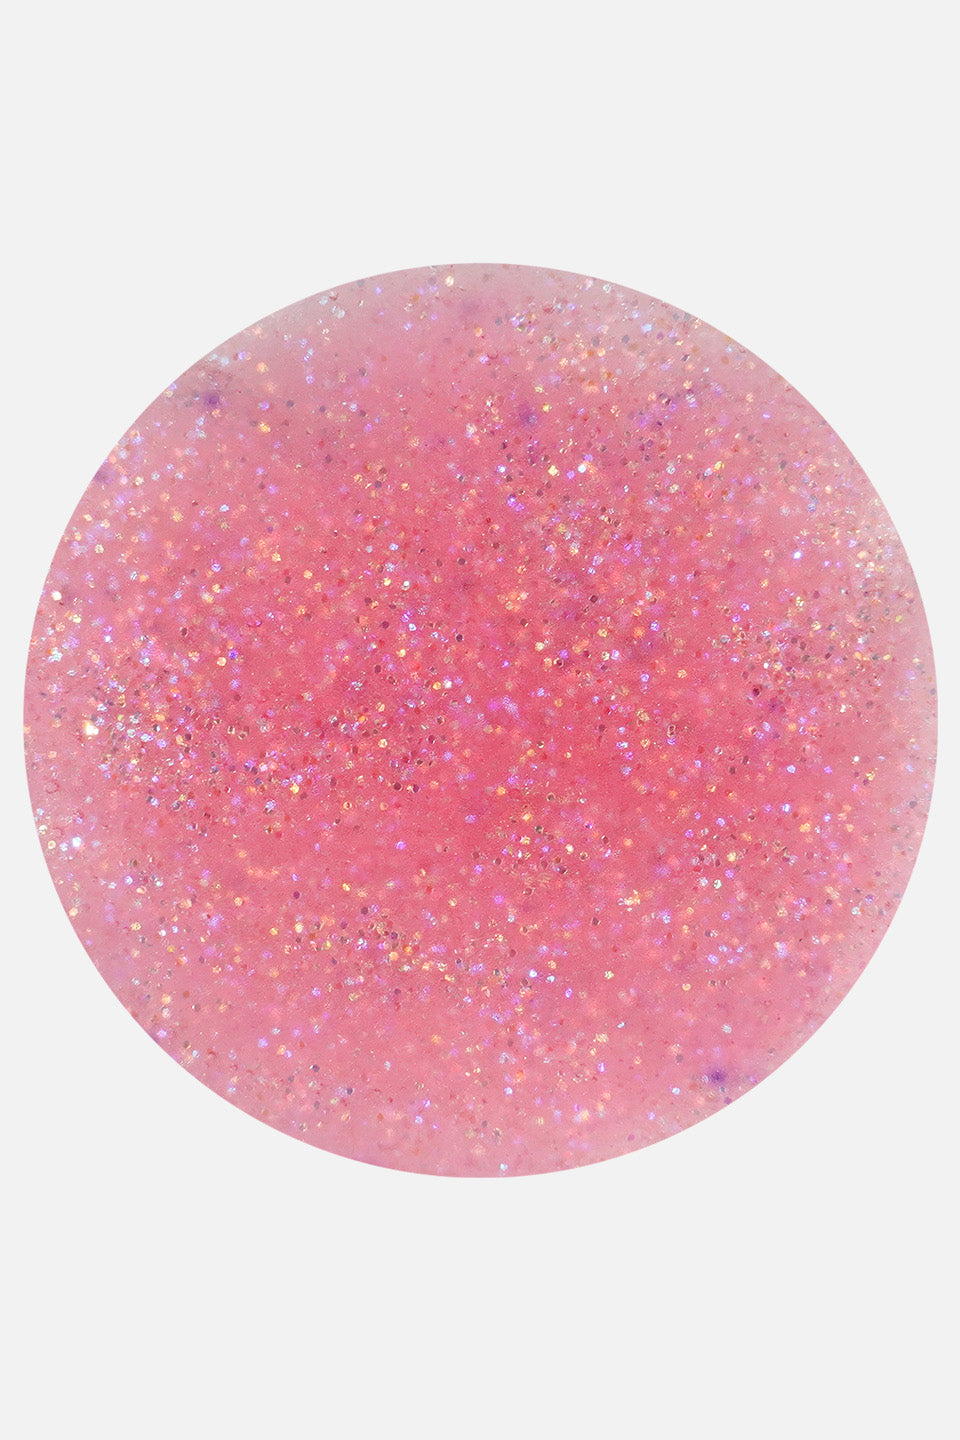 Polvo acrílico rosa malva glitter 5 g